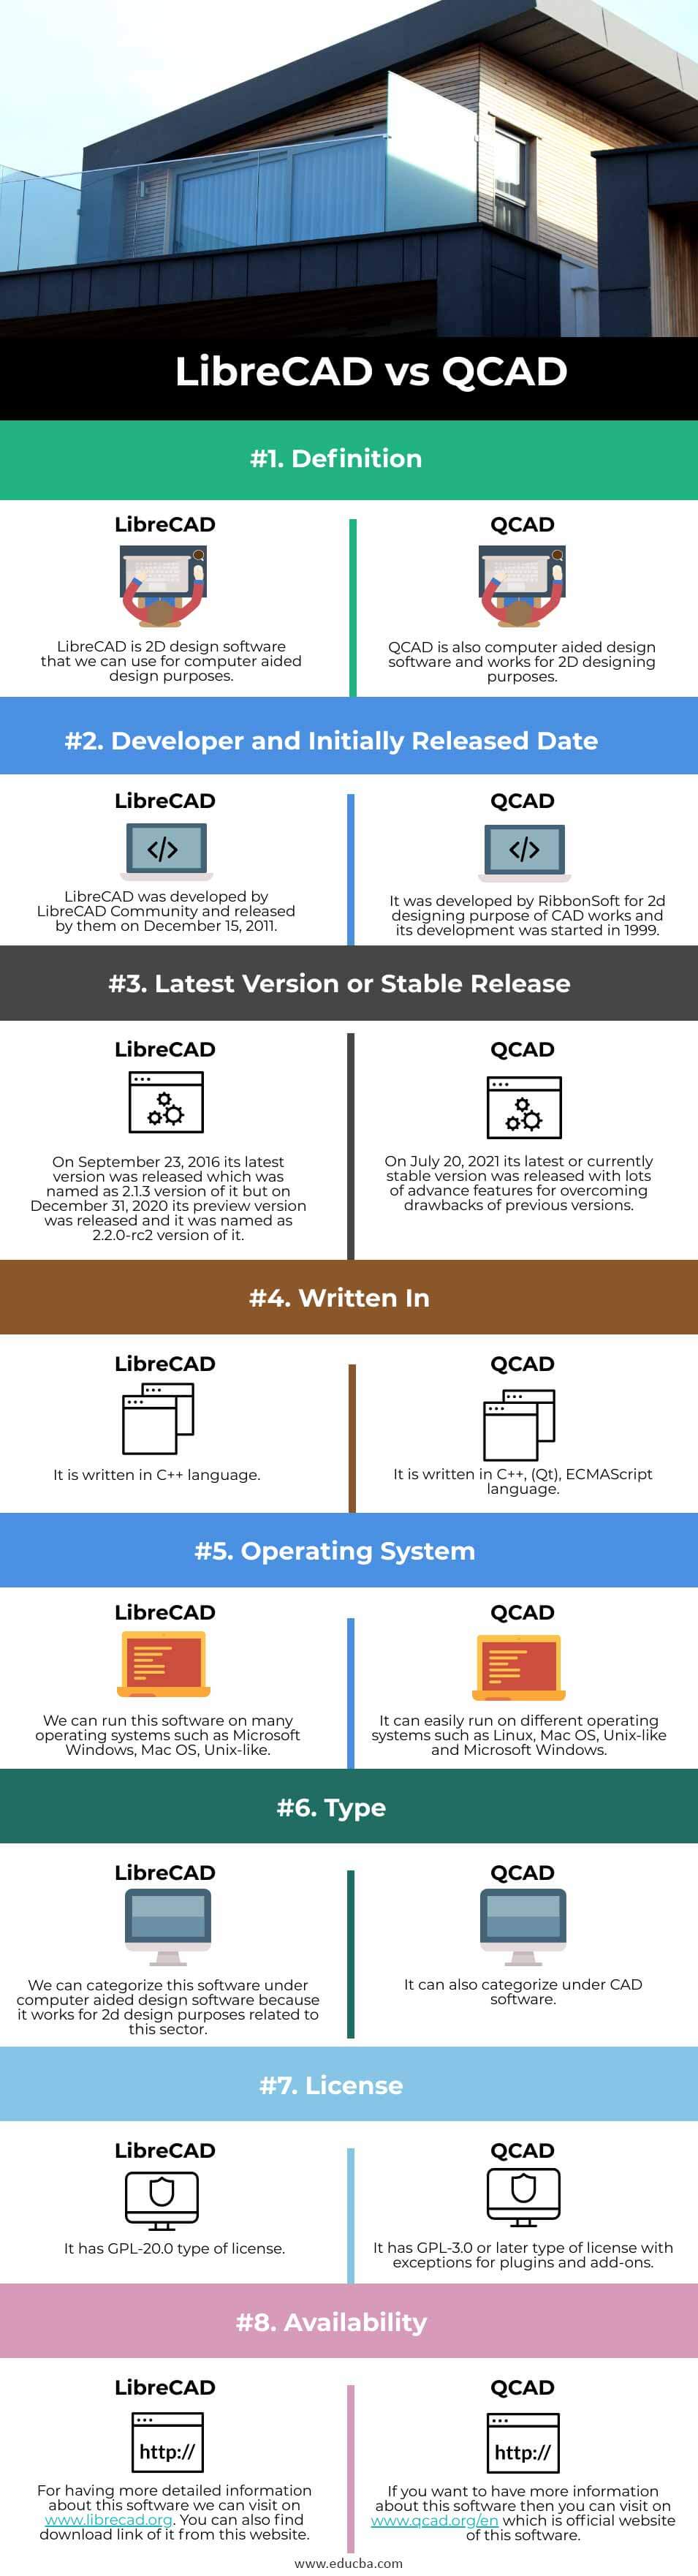 LibreCAD-vs-QCAD-info